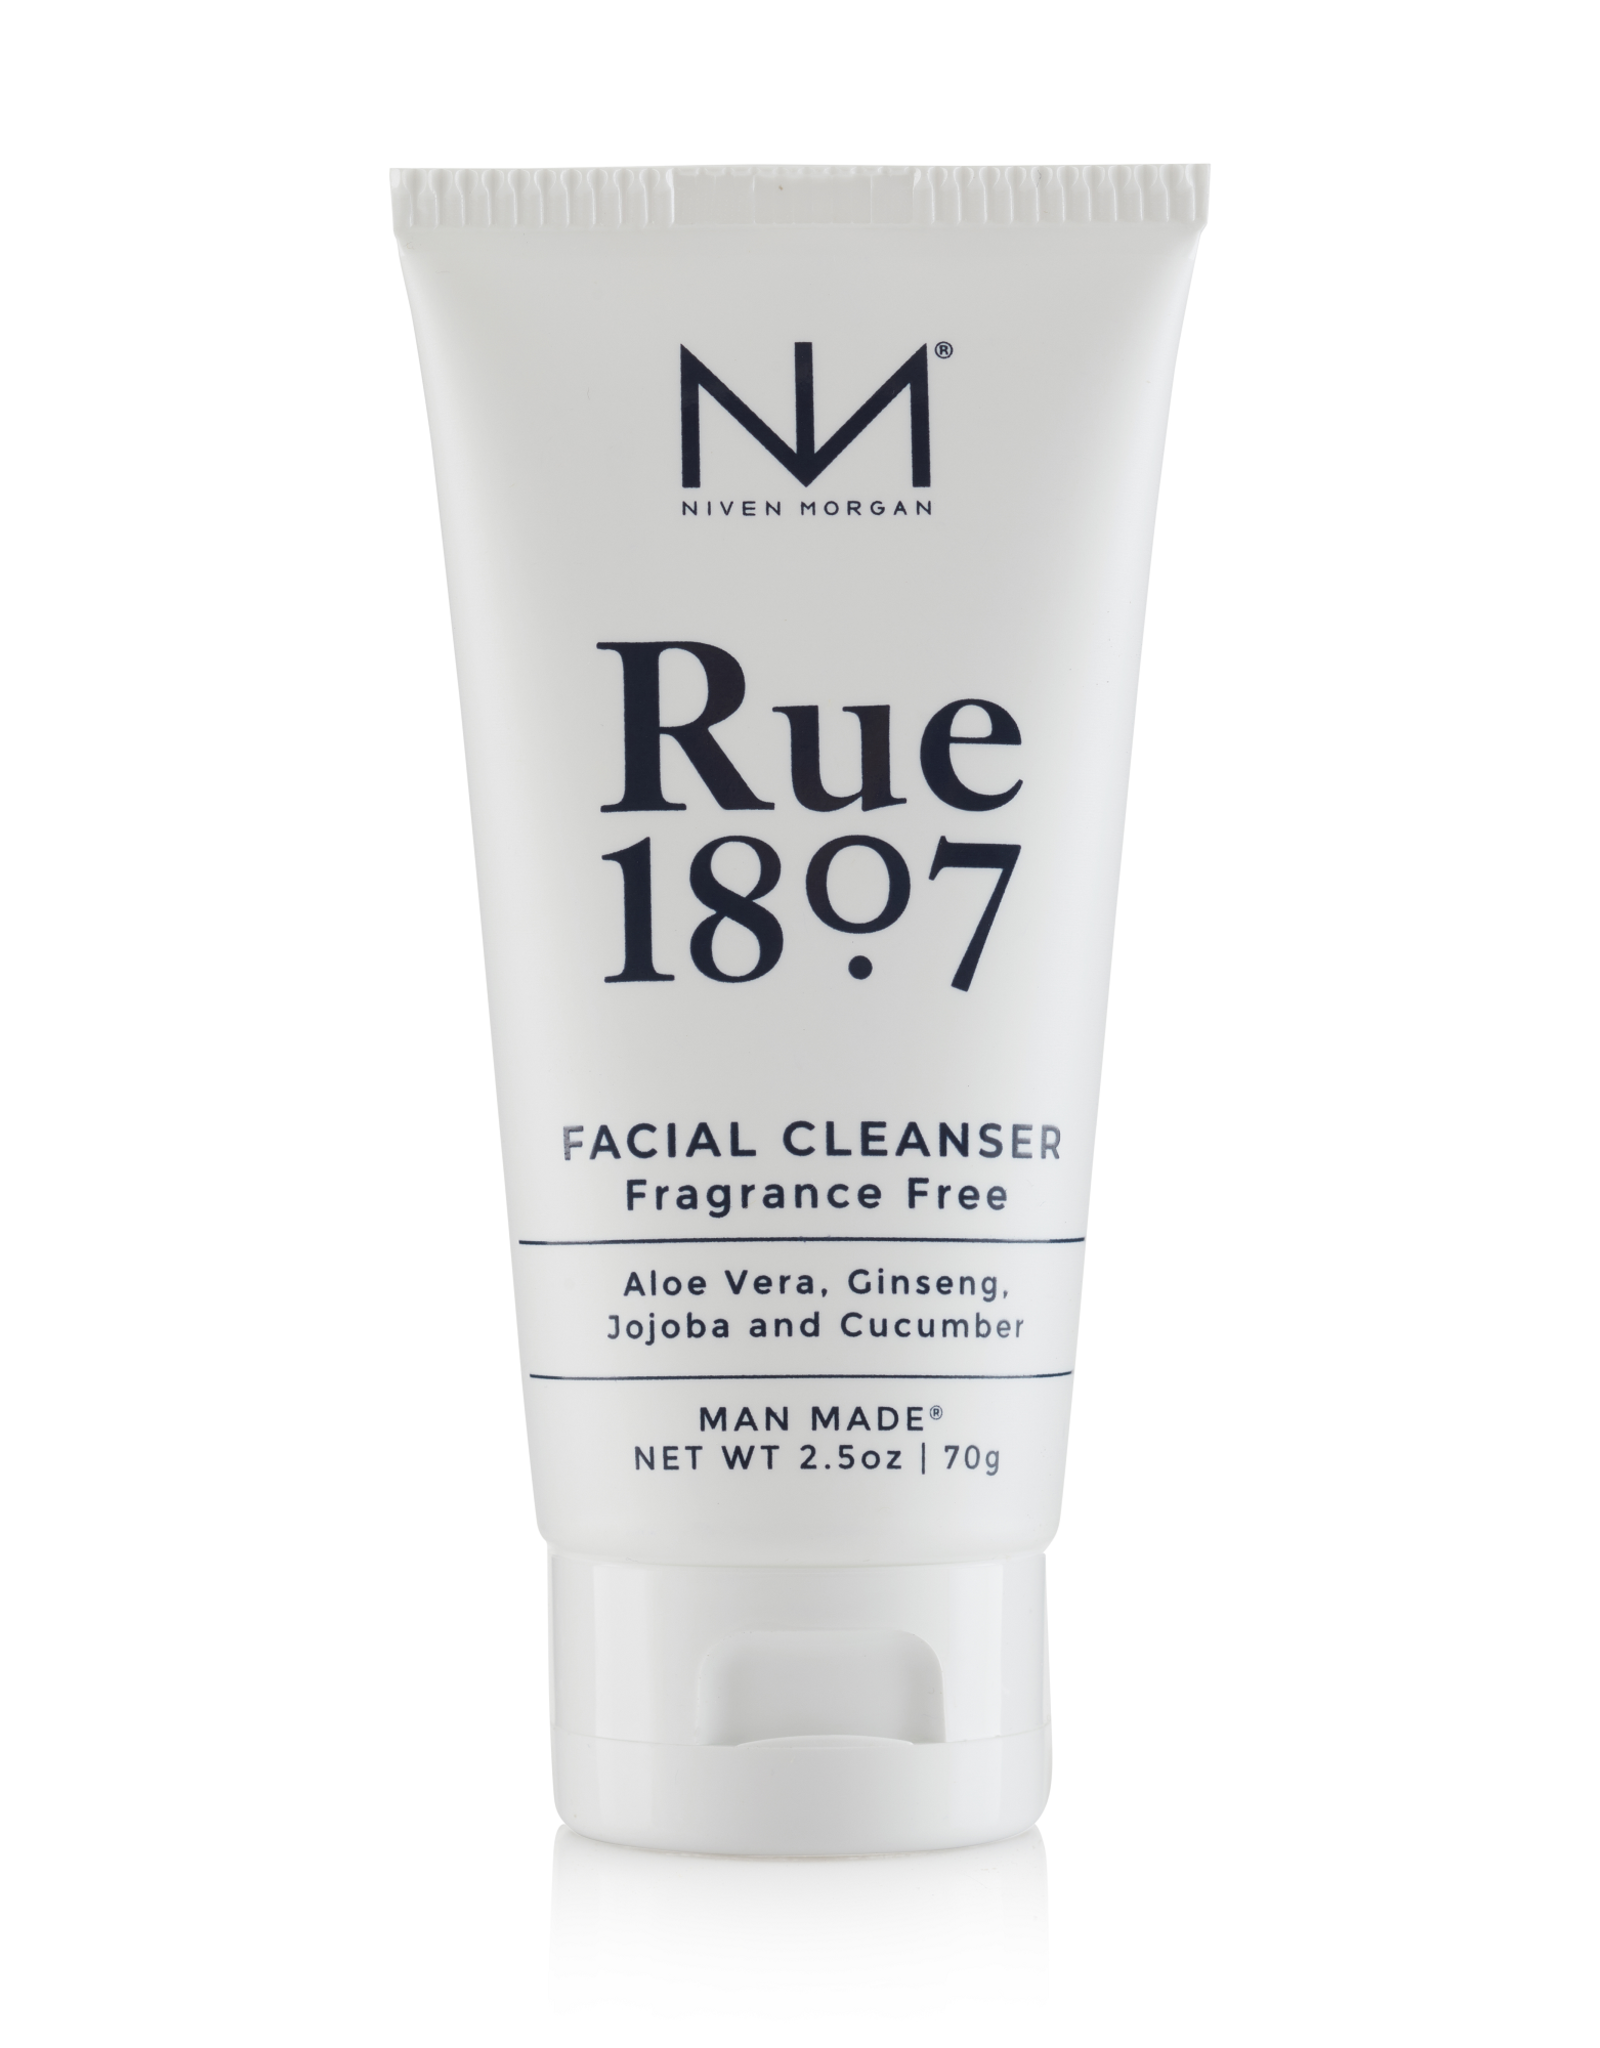 NM Rue 1807 Facial Cleanser 2.5 oz